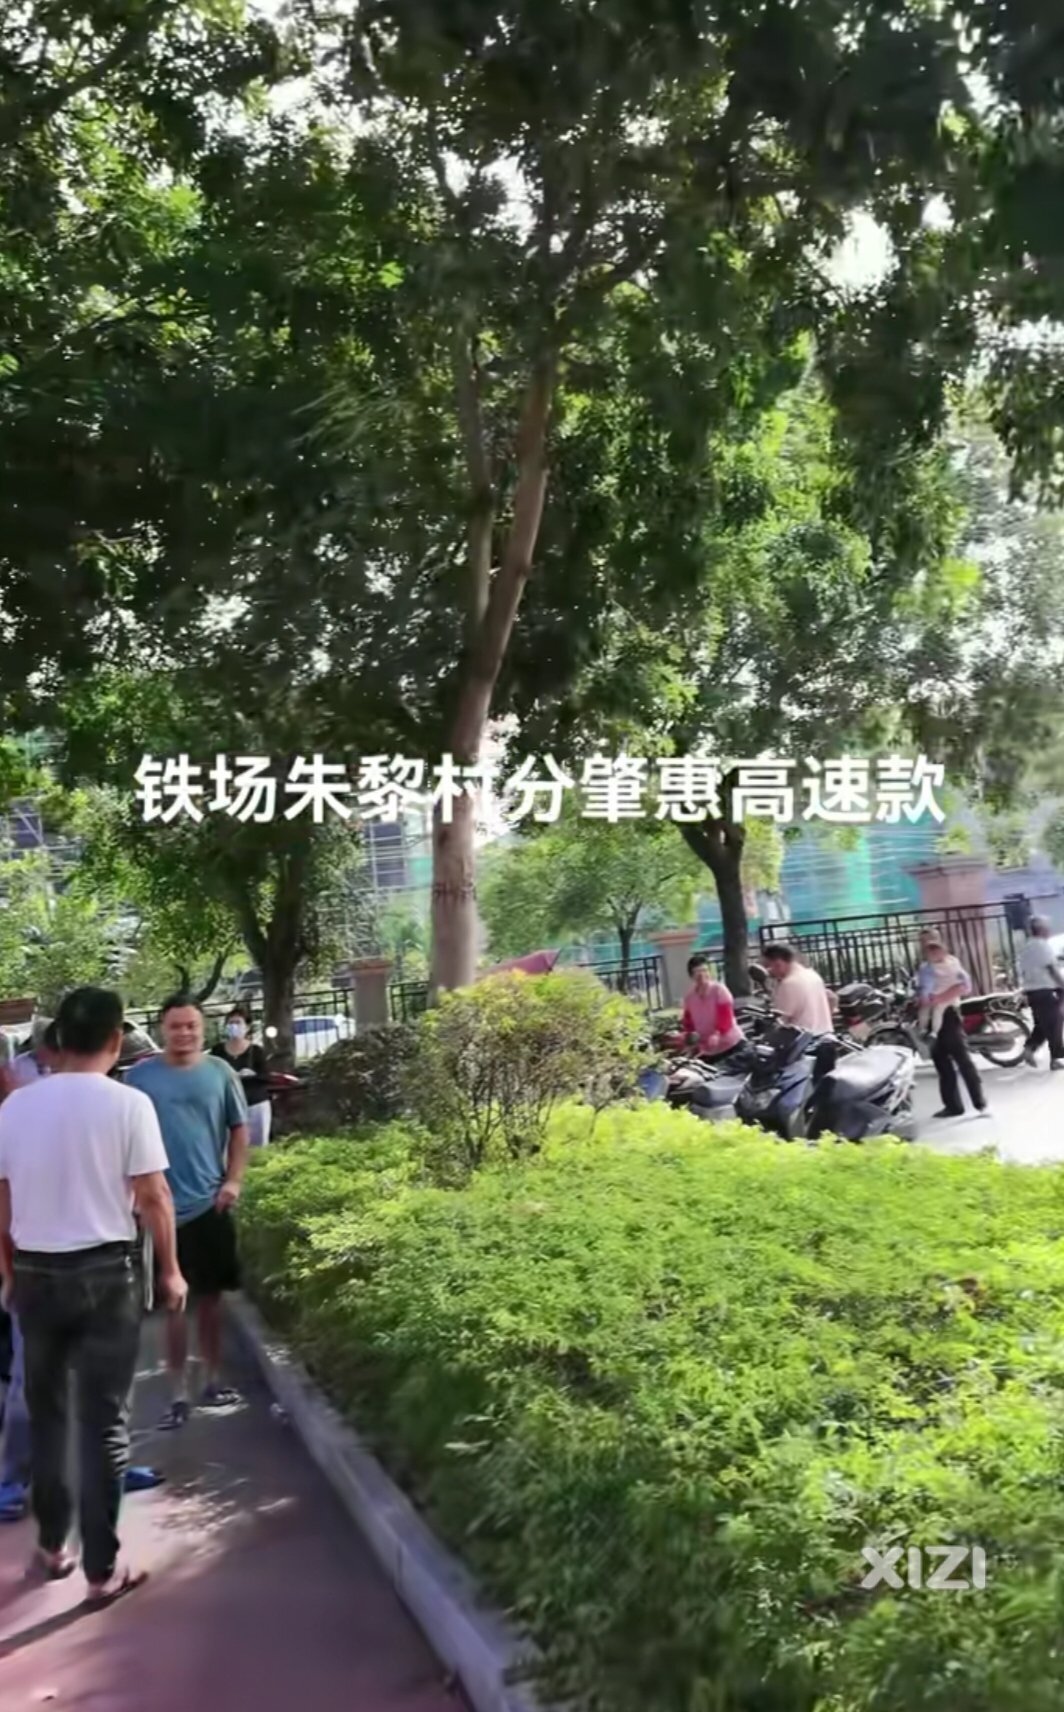 广惠第二高速一期让沿线惠城、博罗村民征收致富了。少奋斗10年。